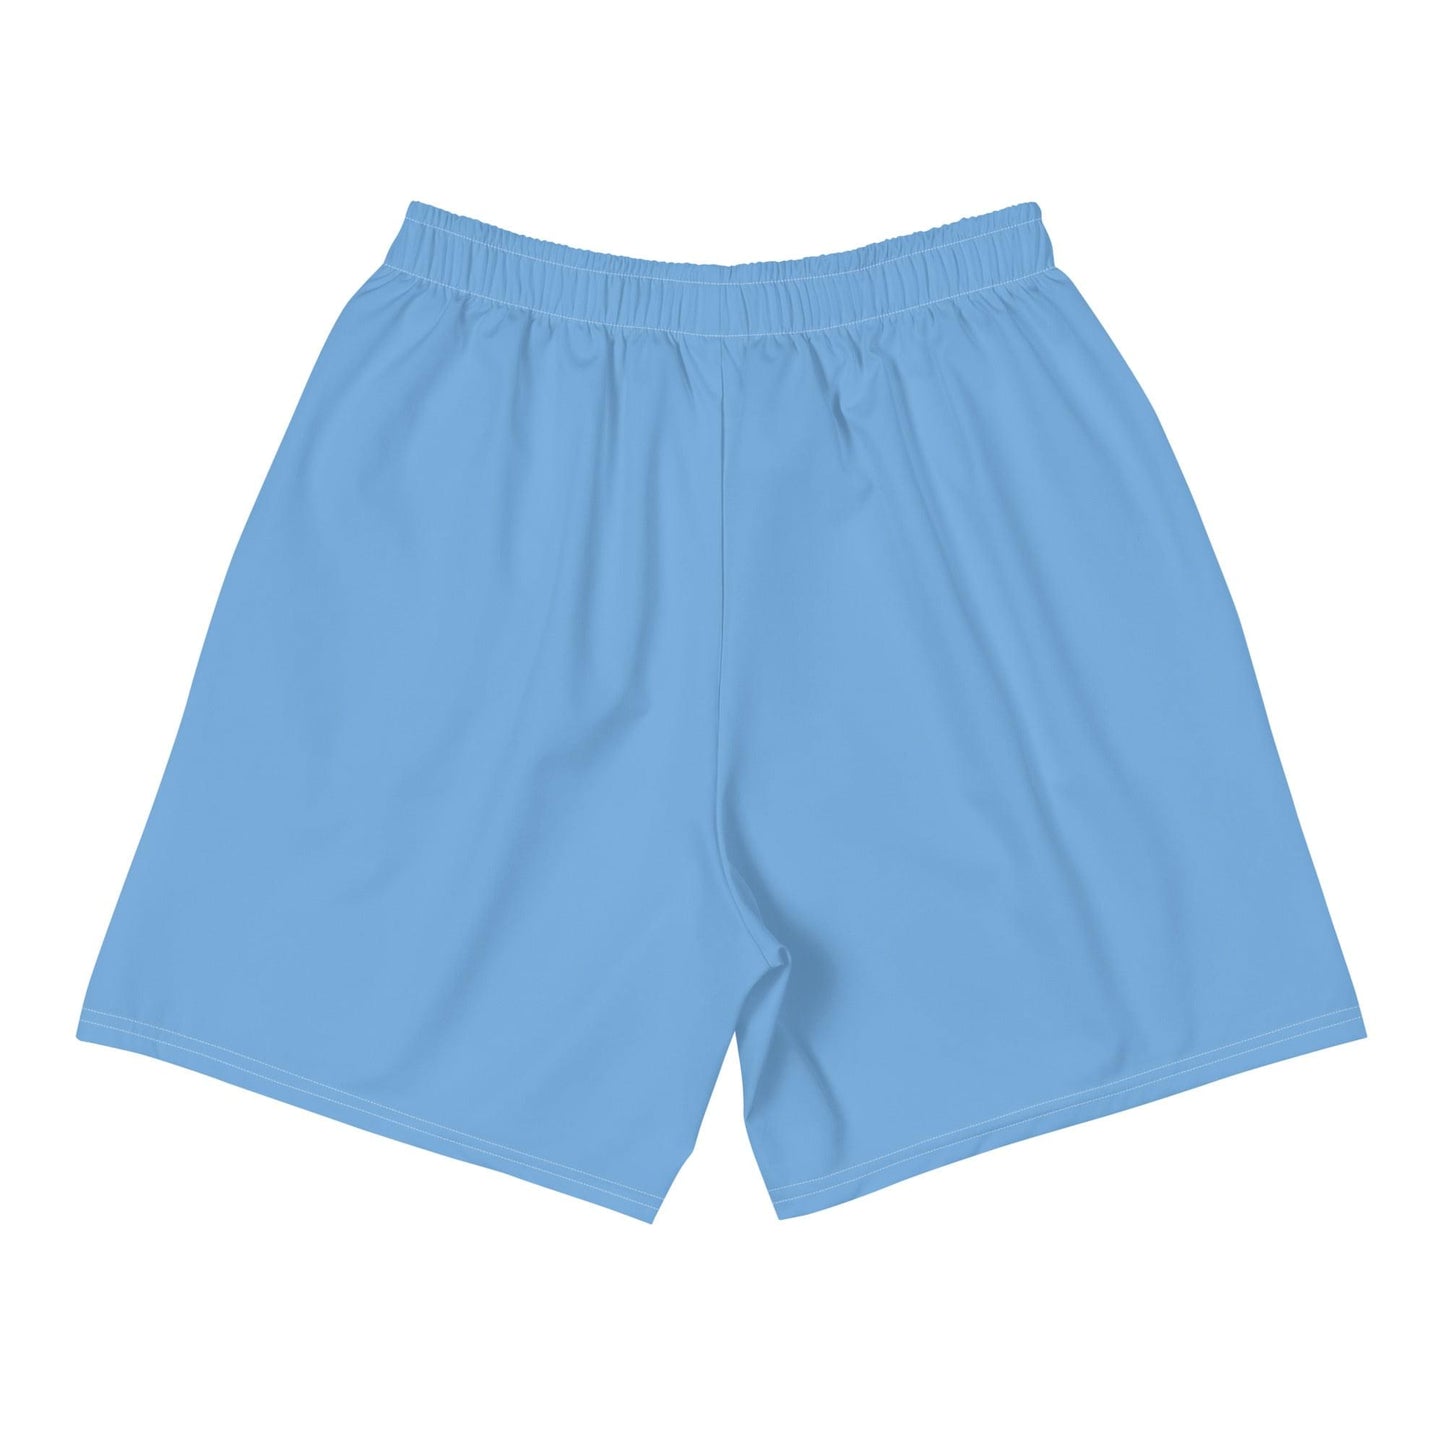 Shorts Argentine pour hommes / Style vestimentaire argentin / Polyester recyclé